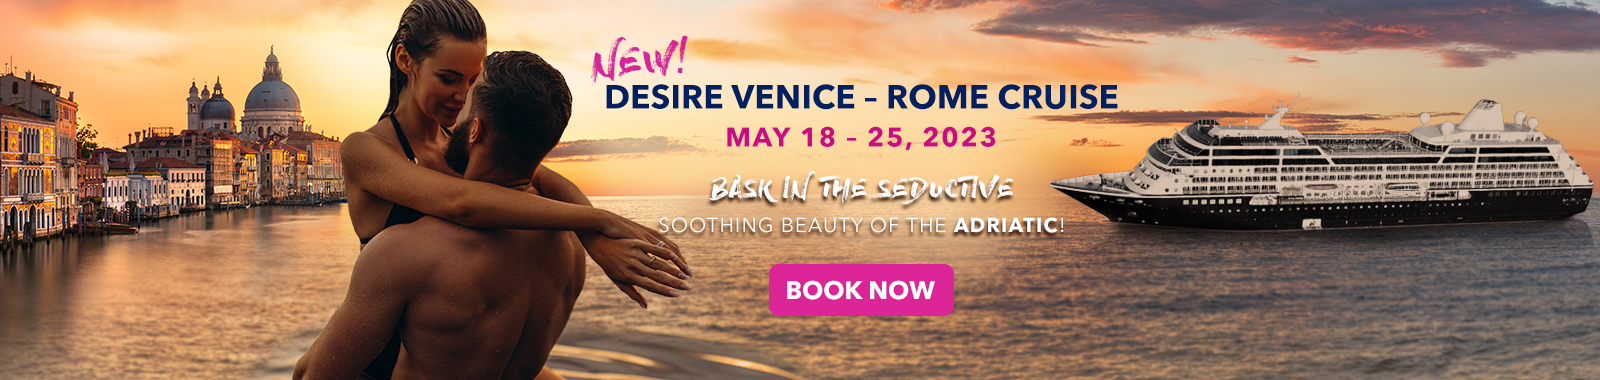 Desire Venice Rome Cruise 2023